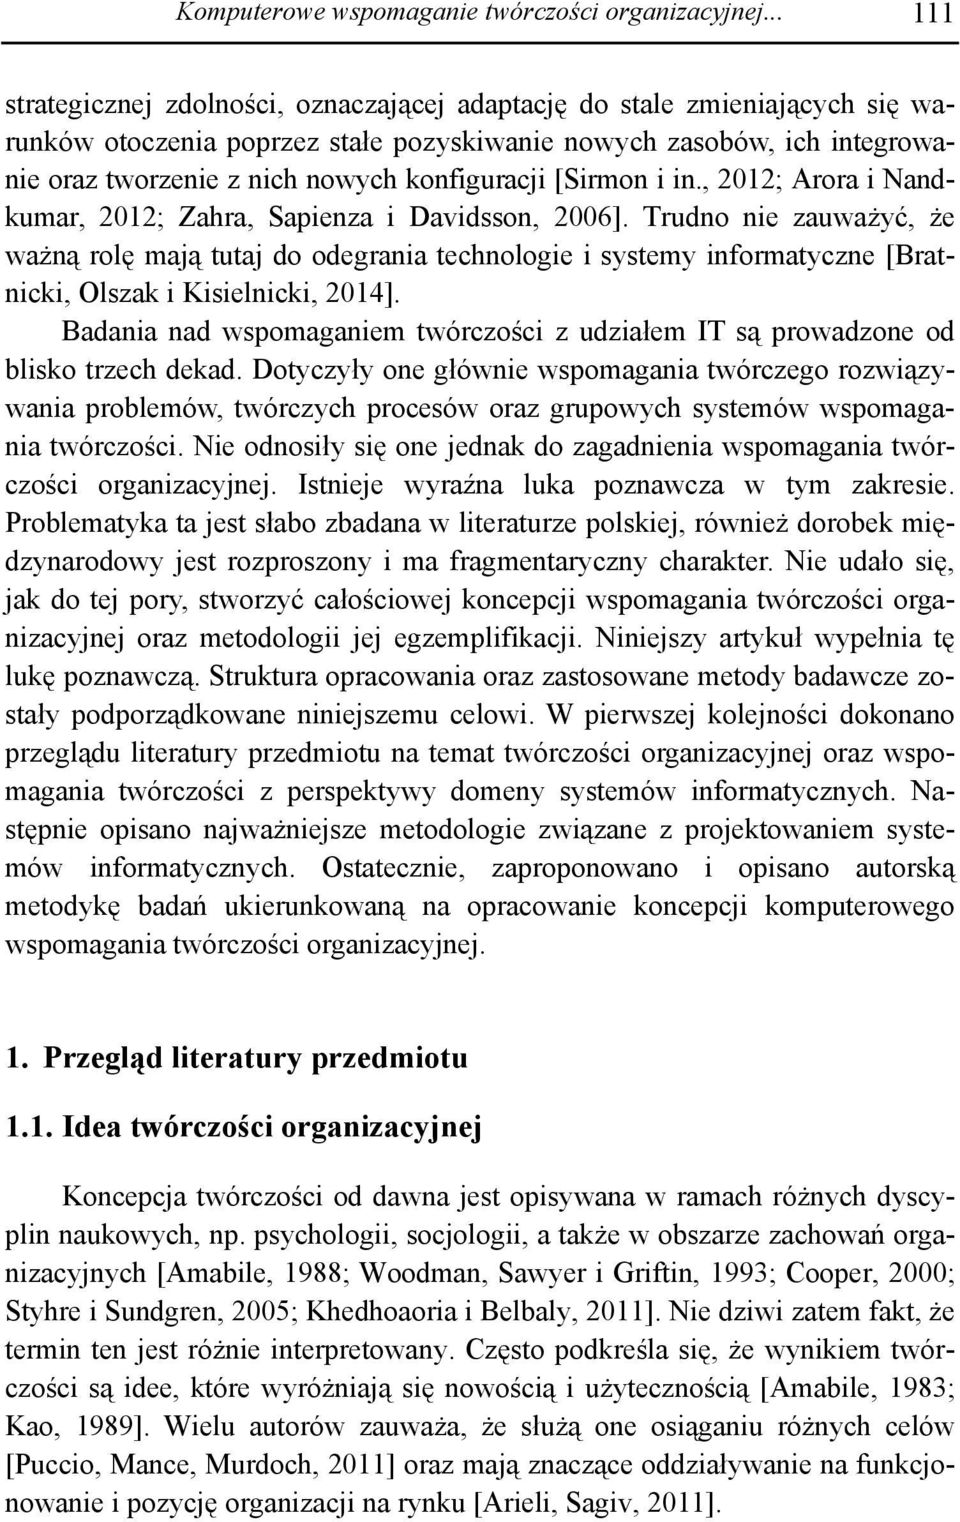 konfiguracji [Sirmon i in., 2012; Arora i Nandkumar, 2012; Zahra, Sapienza i Davidsson, 2006].